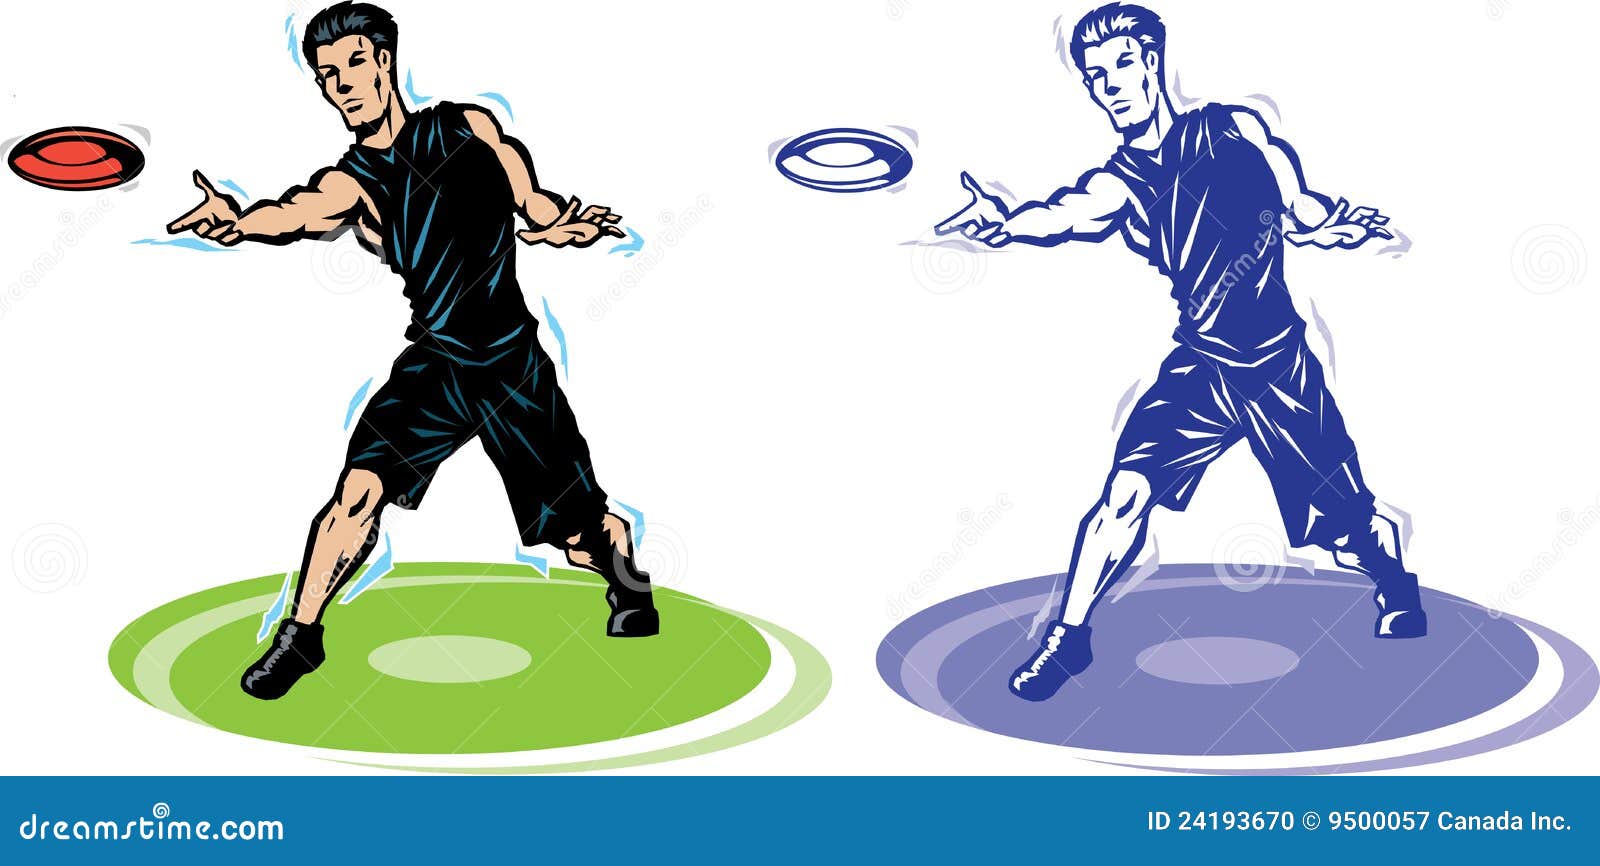 Frisbee Player Catching Flying Frisbee Cartoon Vector | CartoonDealer ...